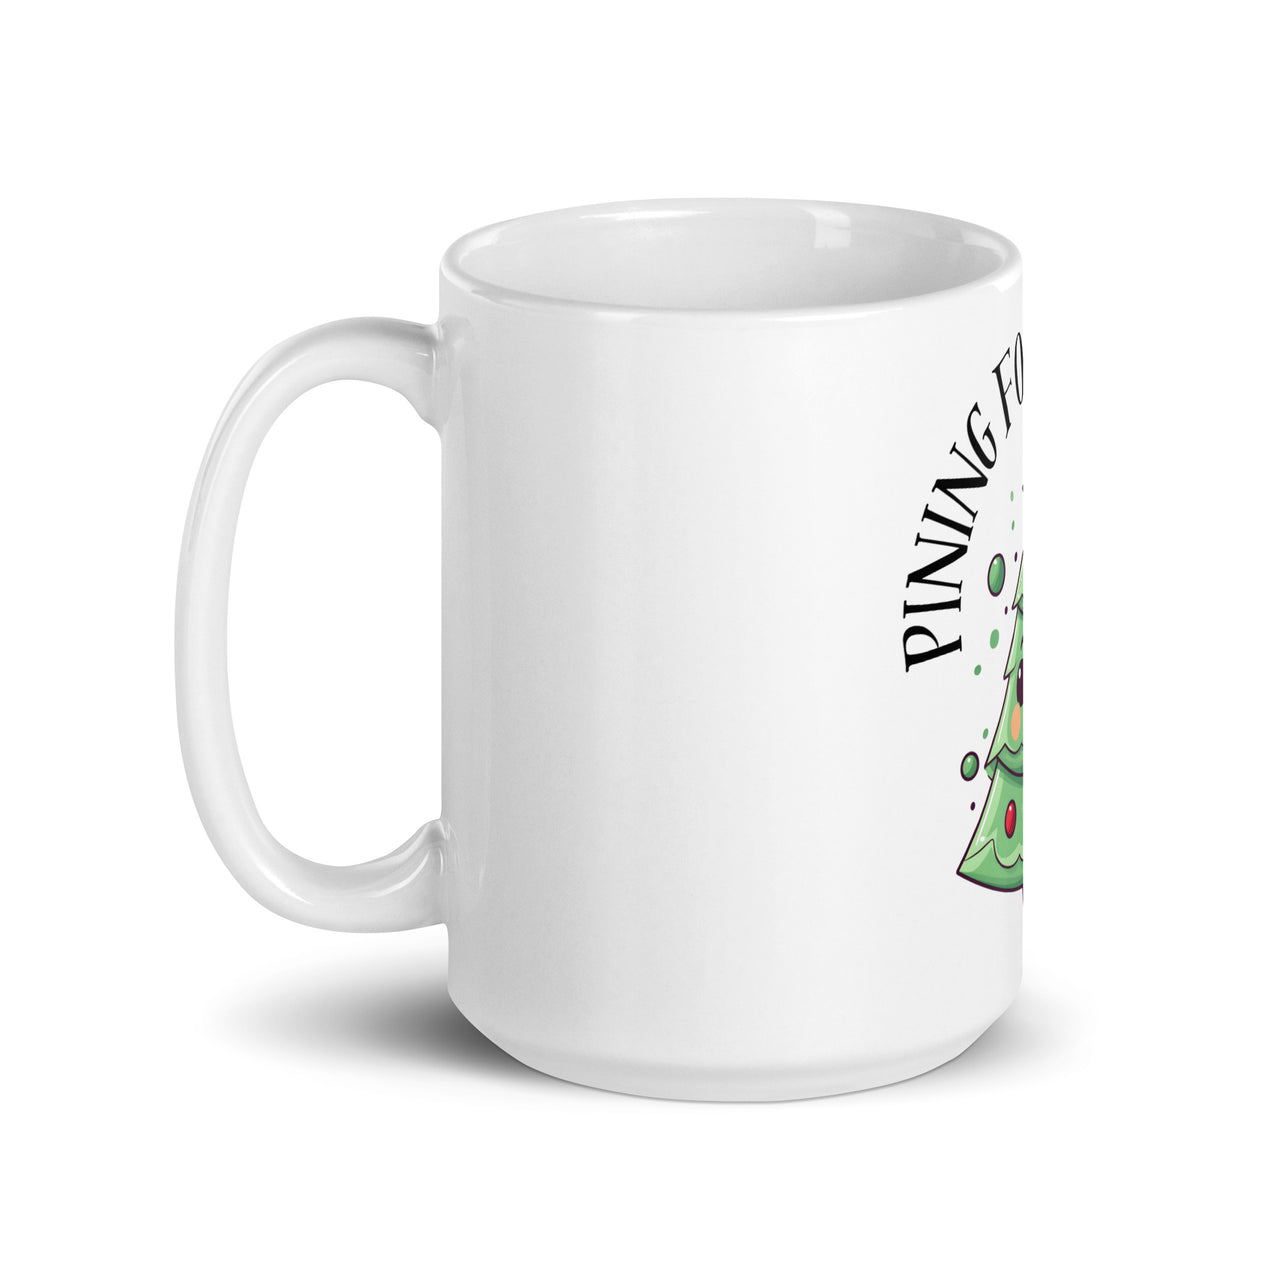 Pining for Presents: Cute Christmas Tree White Mug